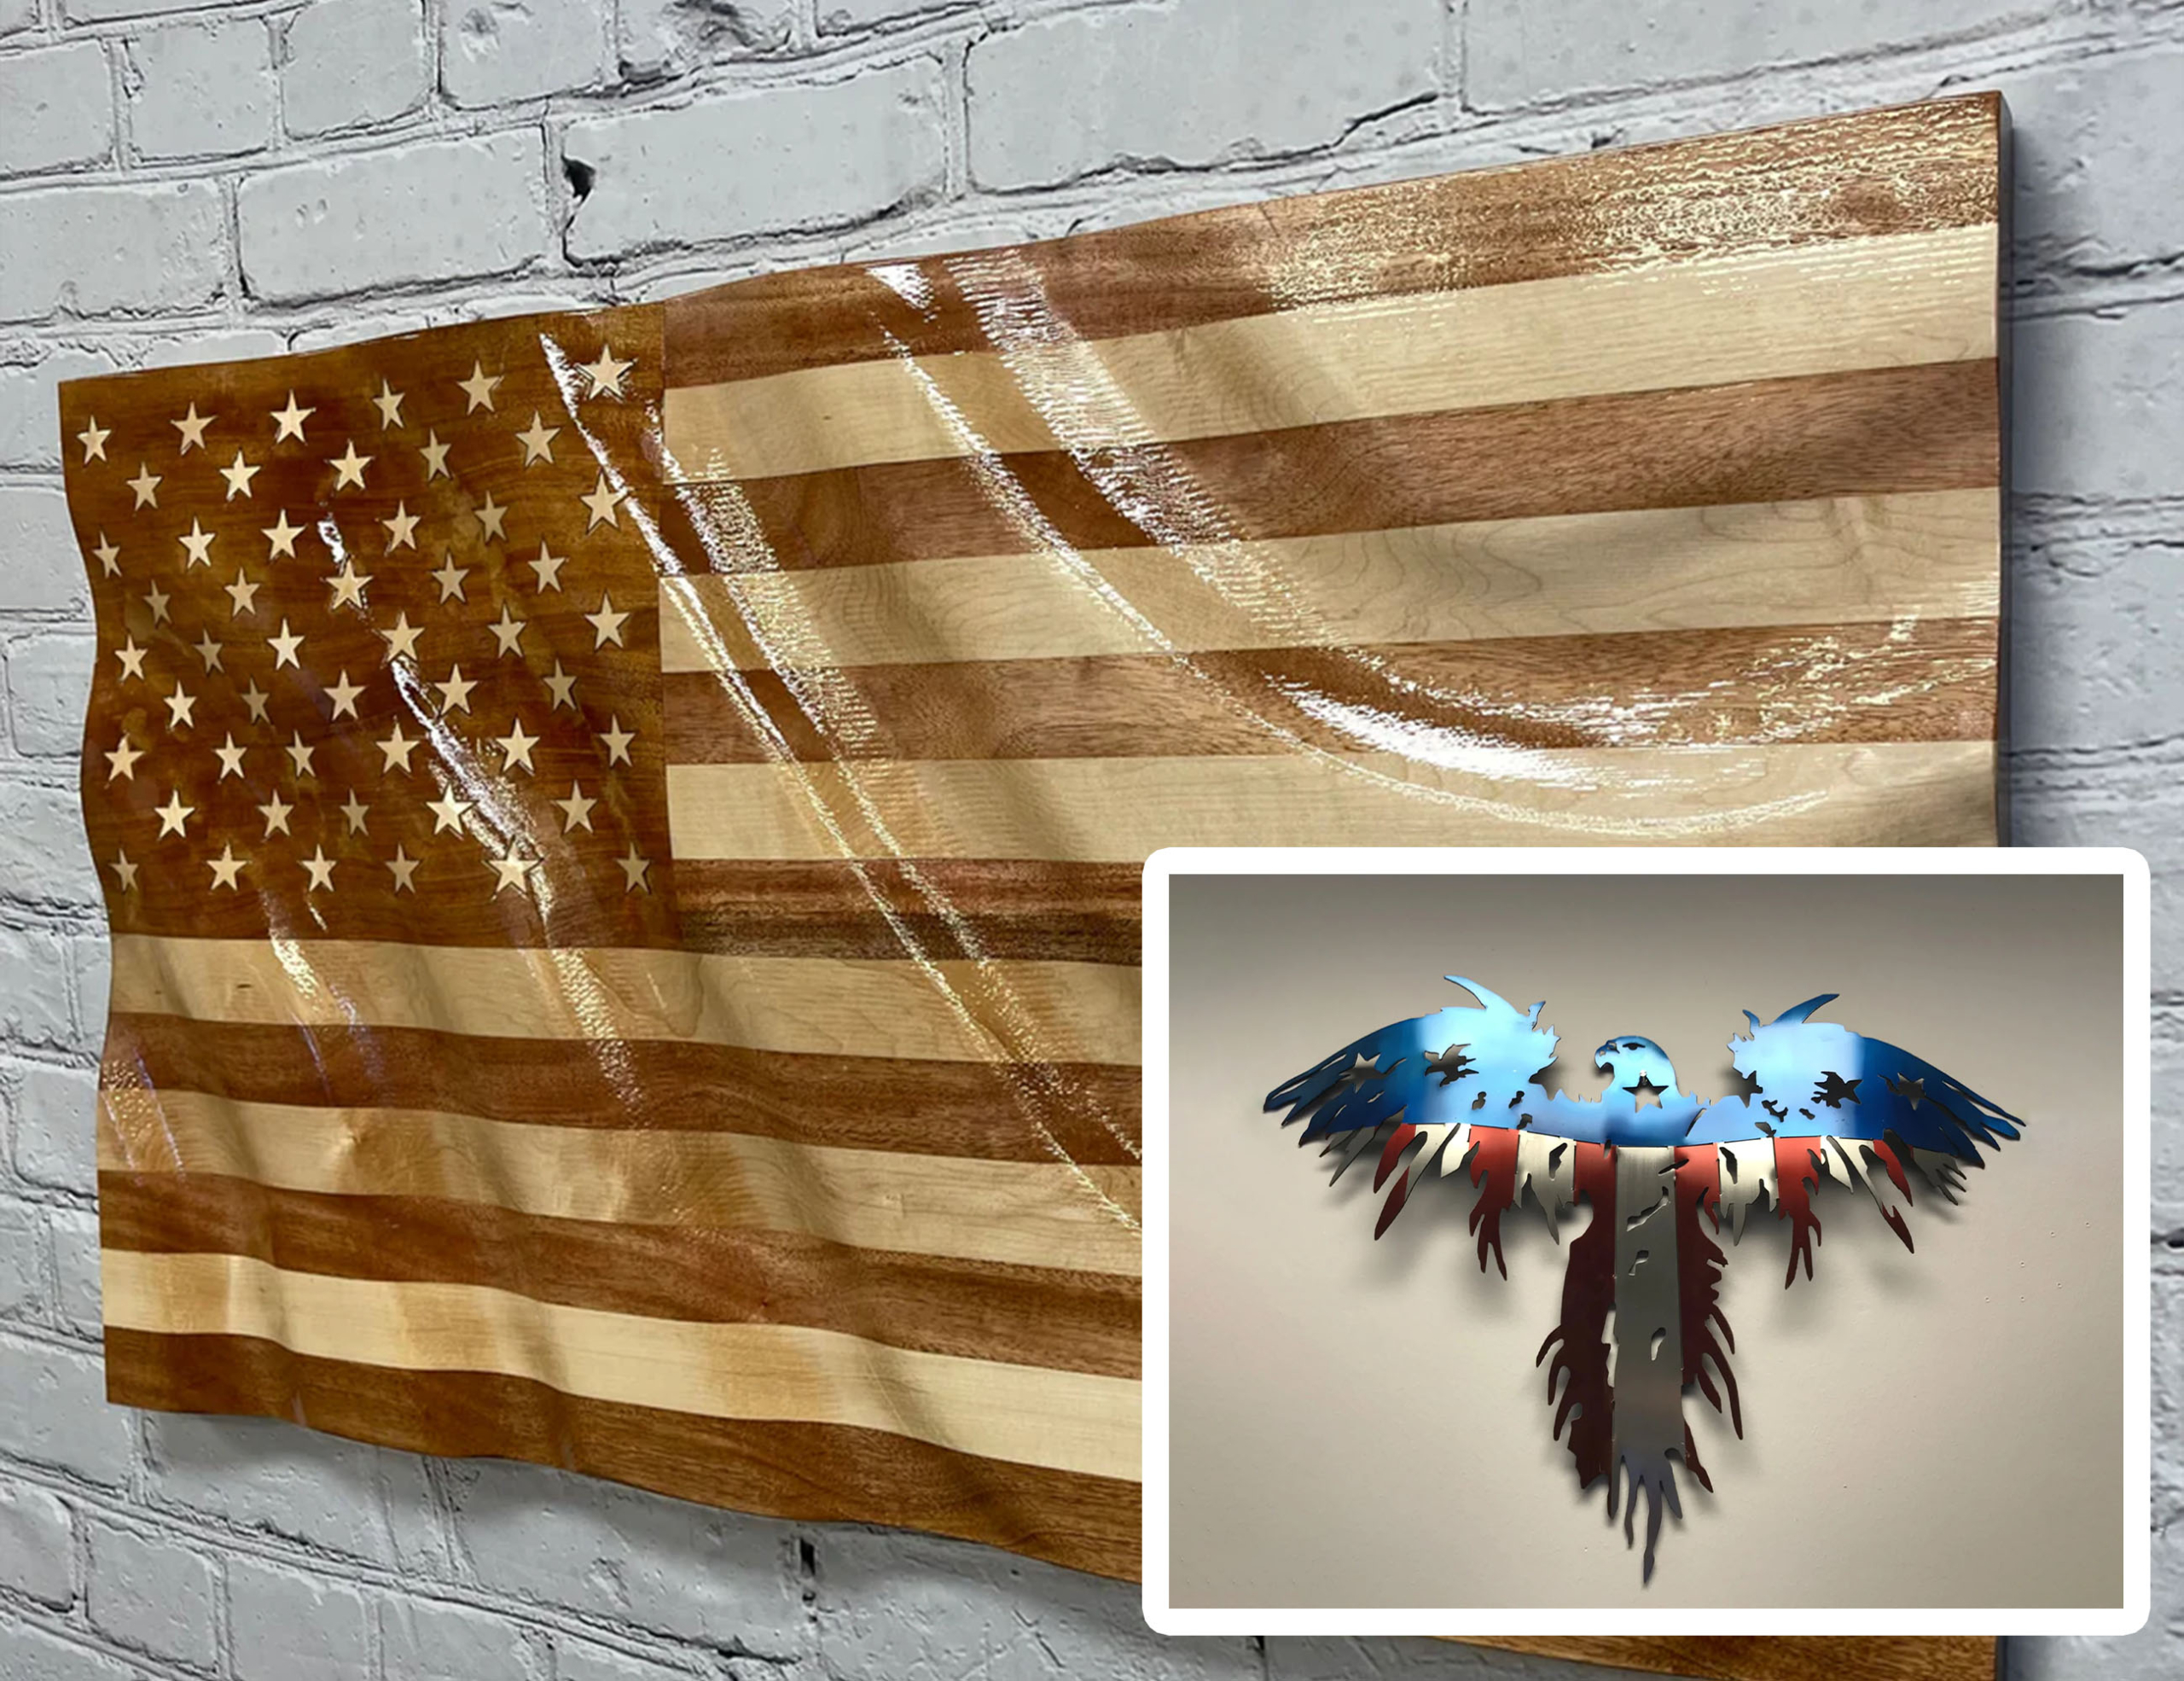 Trên tường là quốc kỳ Mỹ, được làm từ một tấm gỗ chuyên dụng; (ảnh nhỏ) thiết kế đại bàng làm bằng kim loại phỏng theo quốc kỳ Mỹ. (Ảnh: Đăng dưới sự cho phép của ông Shane Henderson)